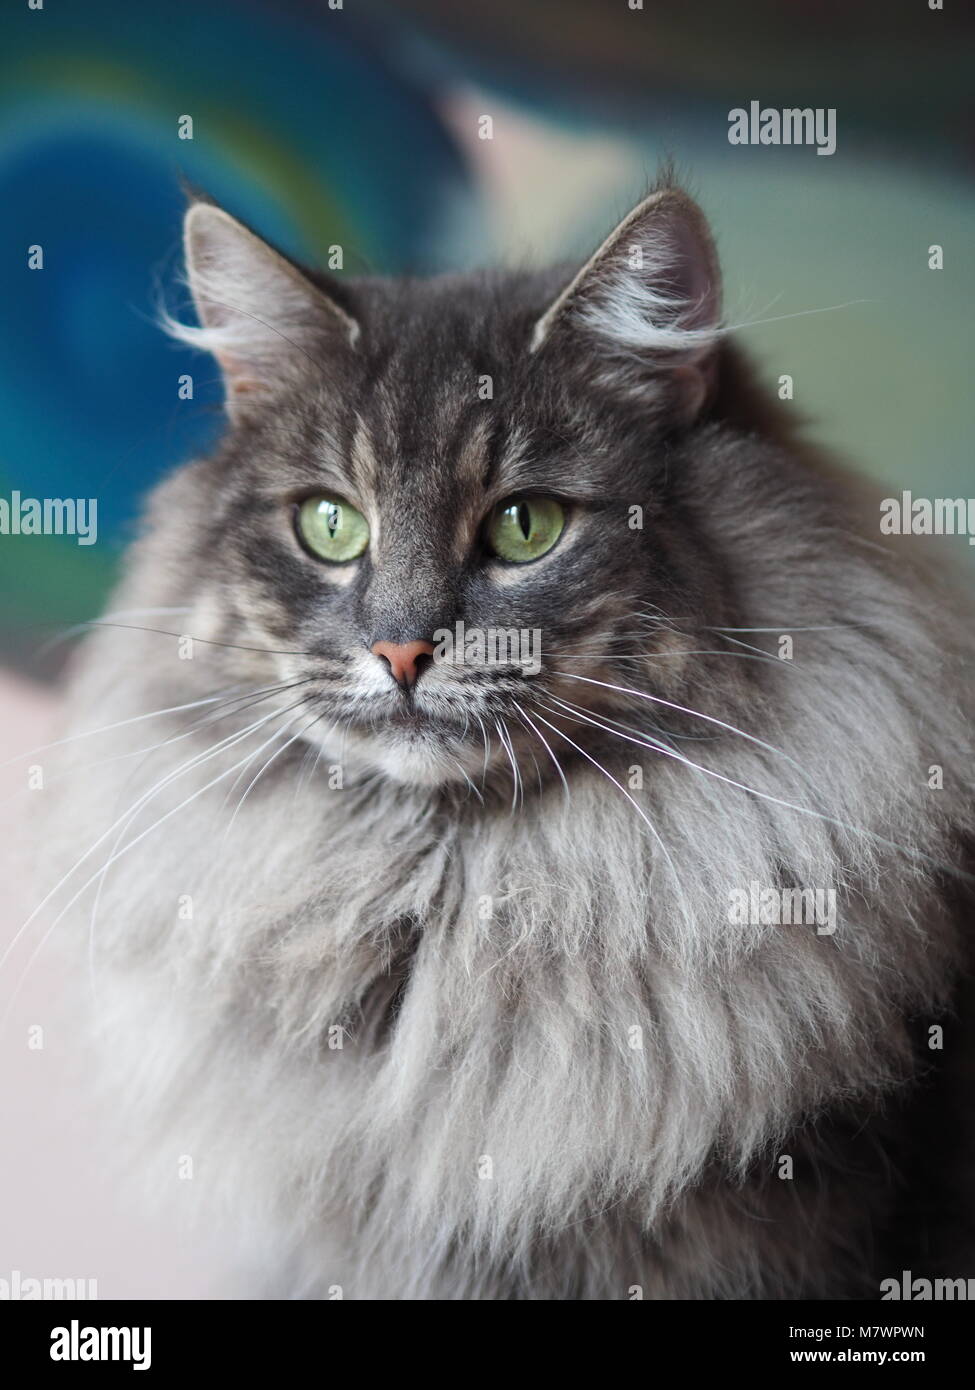 Razze di gatti rari immagini e fotografie stock ad alta risoluzione - Alamy